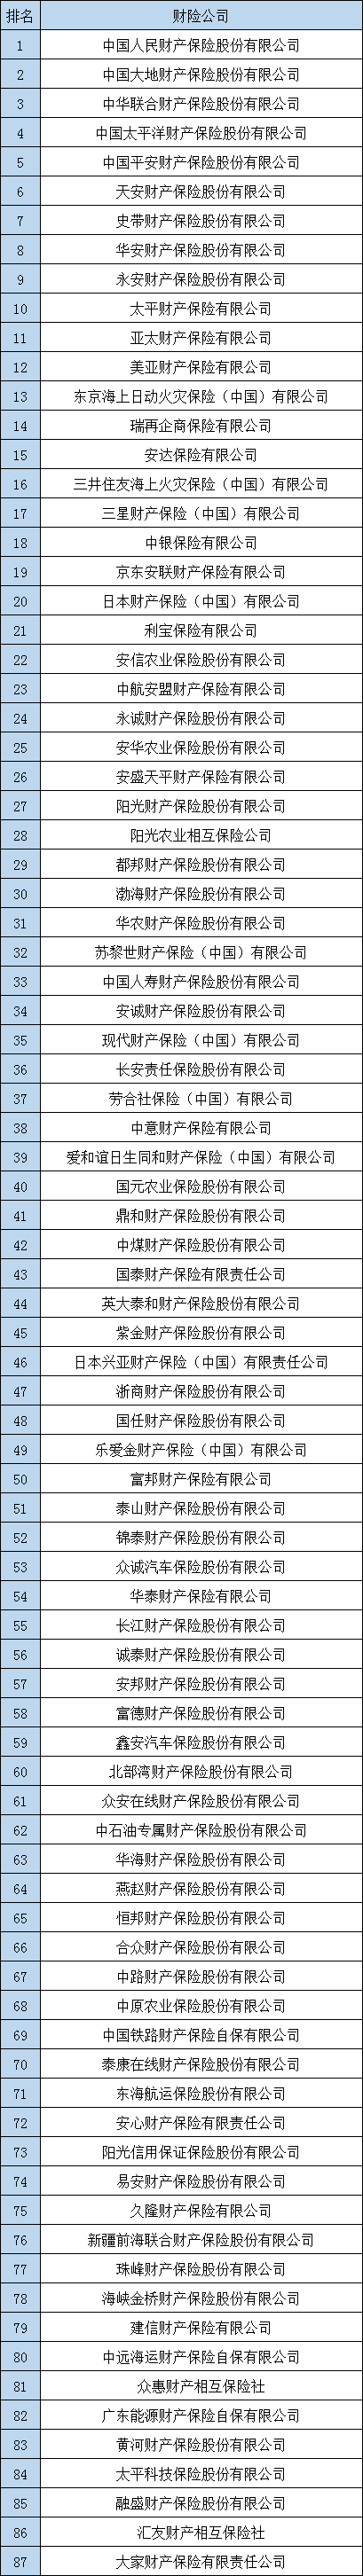 中国保险公司排名插图2